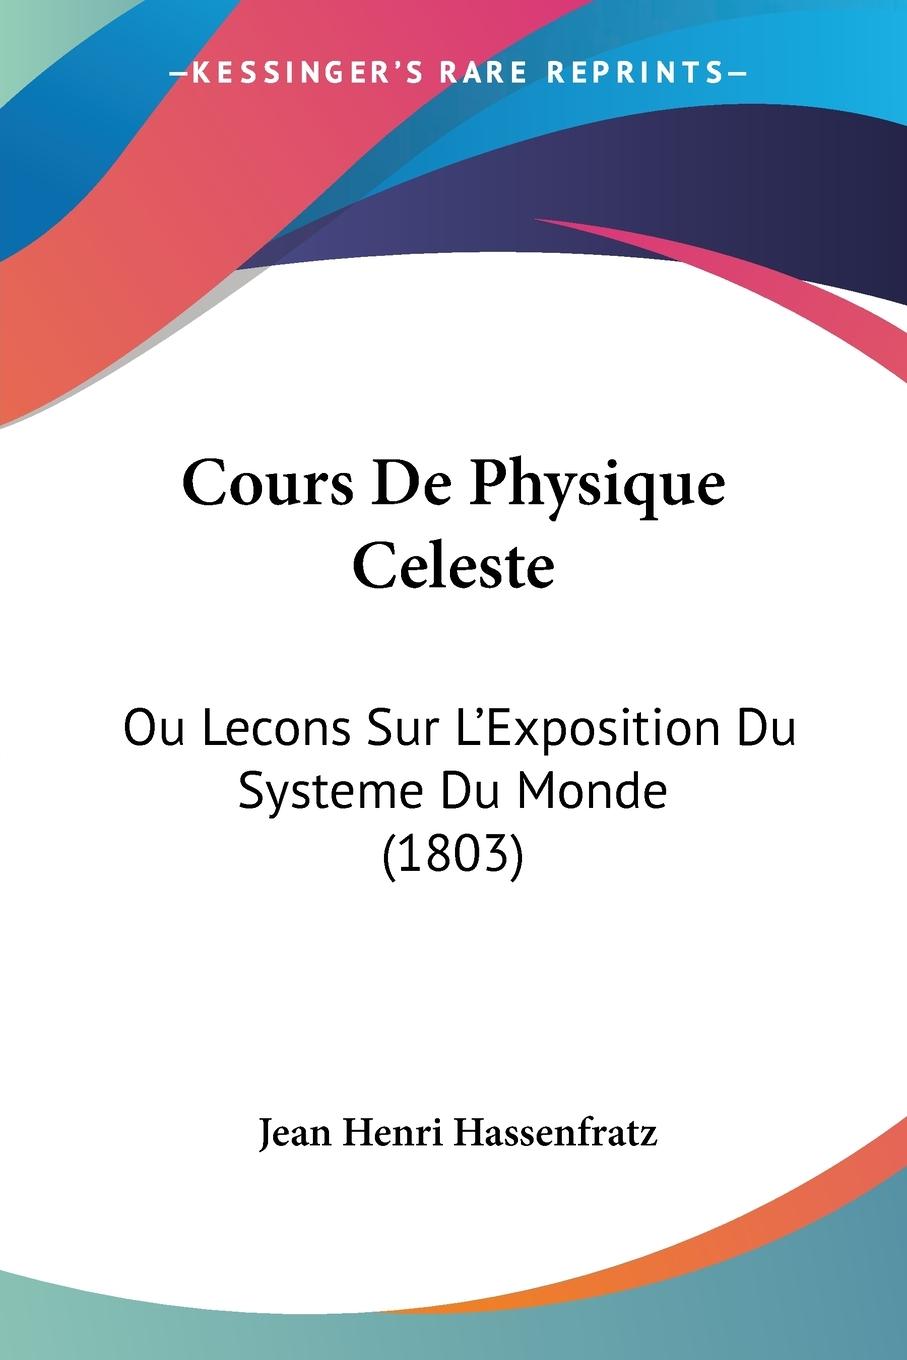 Cours De Physique Celeste - Hassenfratz, Jean Henri